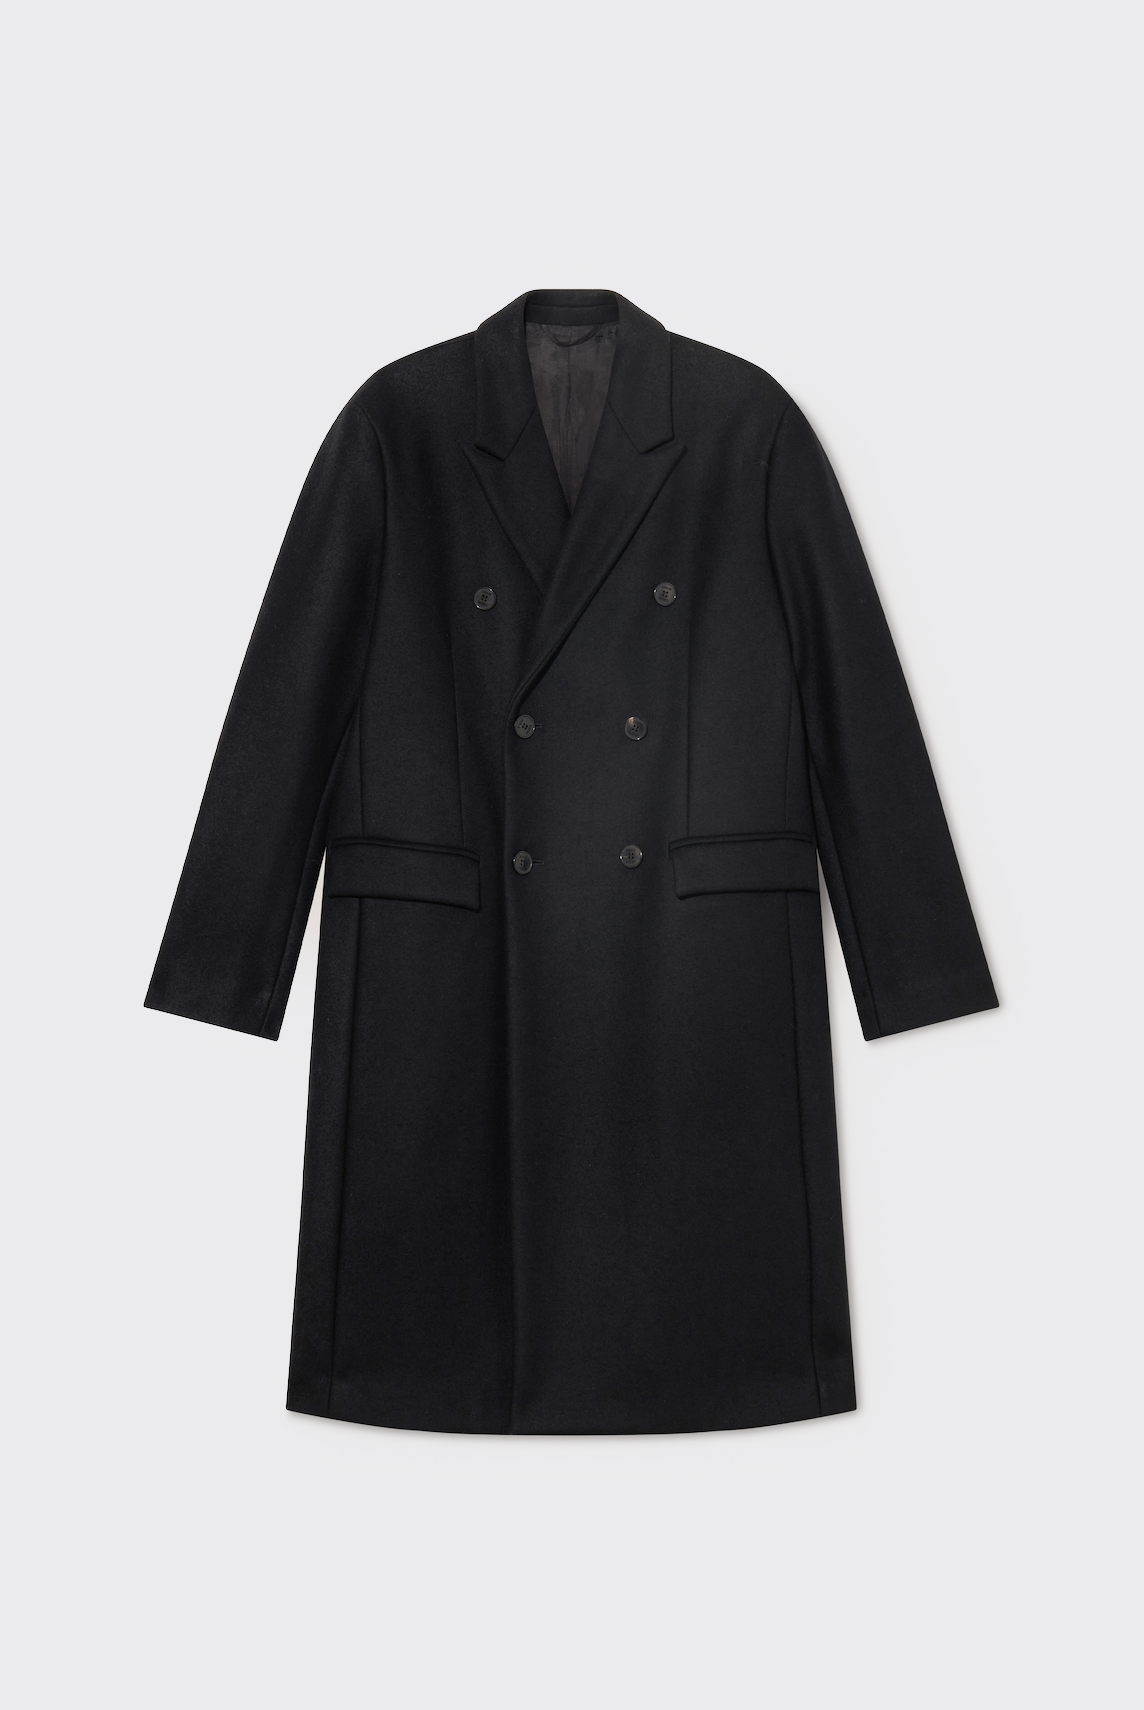 Black Sartorial Coat